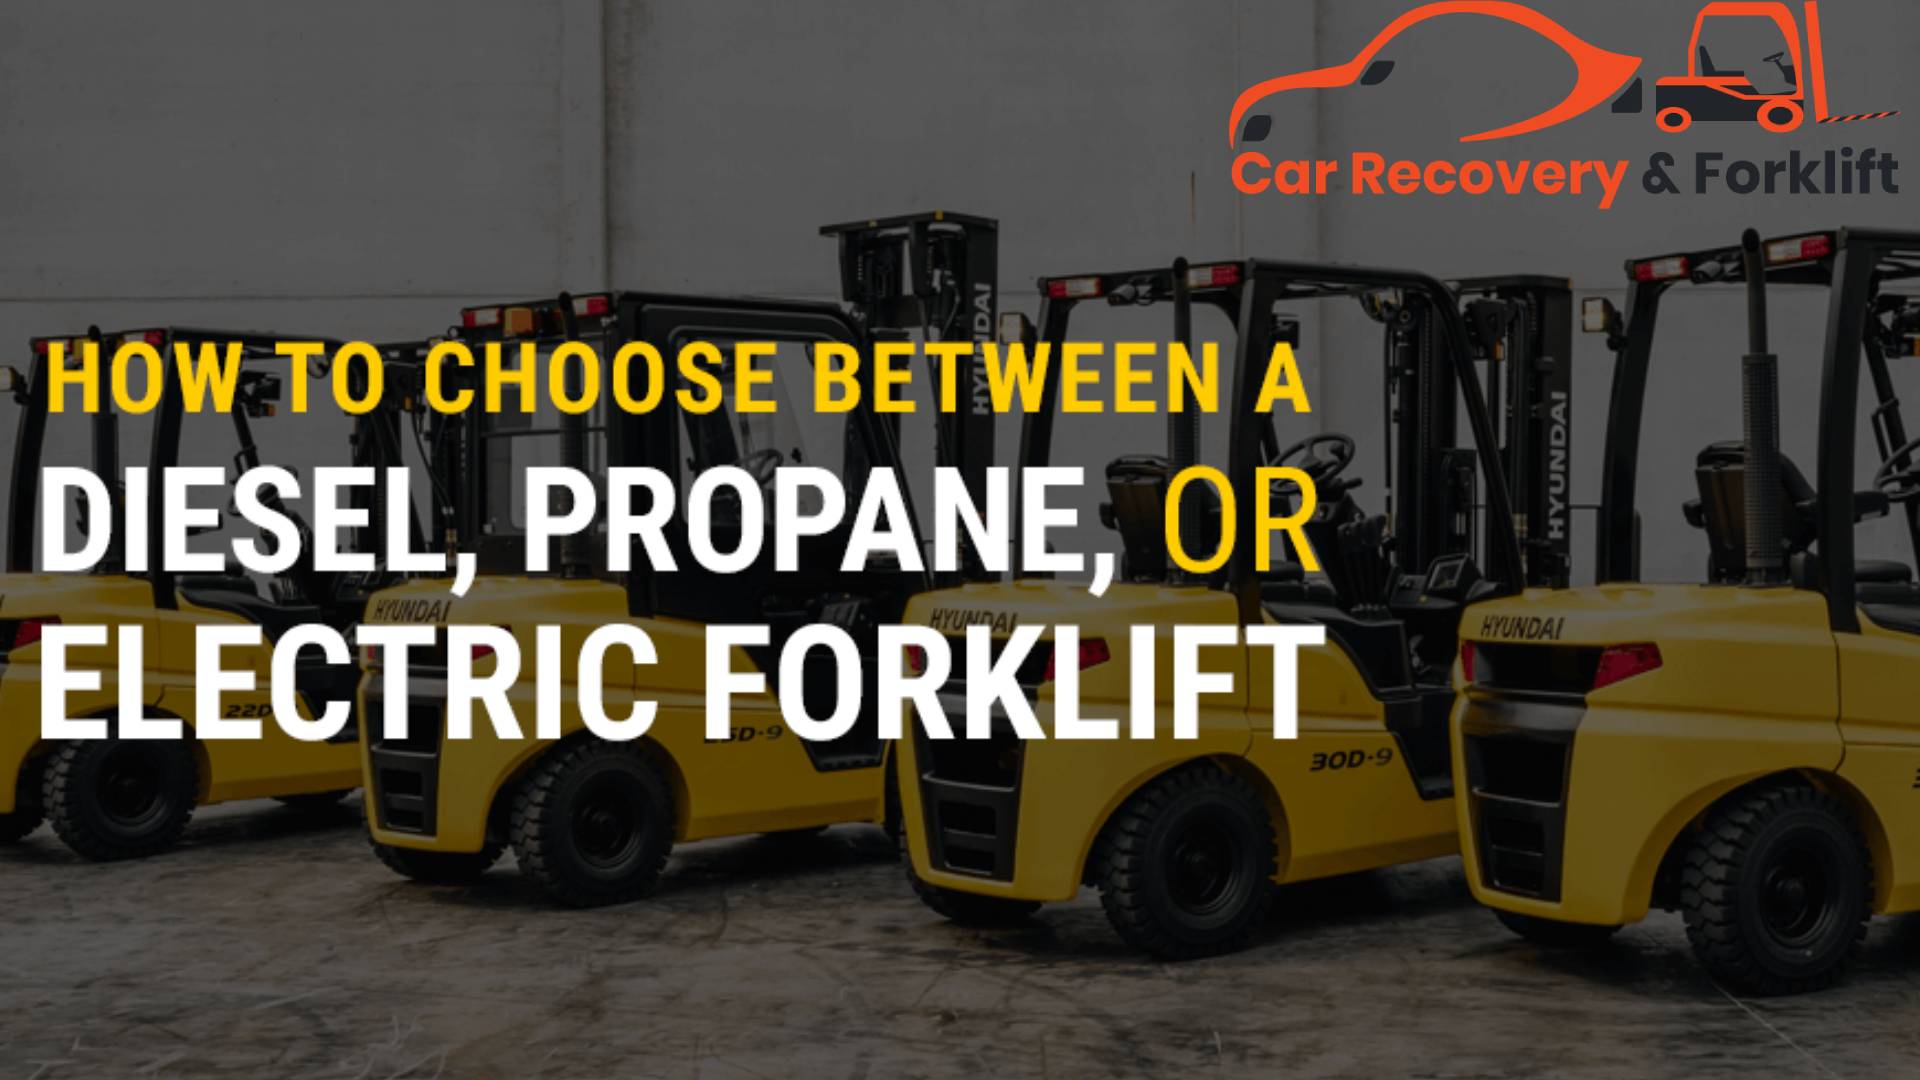 Should I Get a Diesel, Propane, or Electric Forklift?